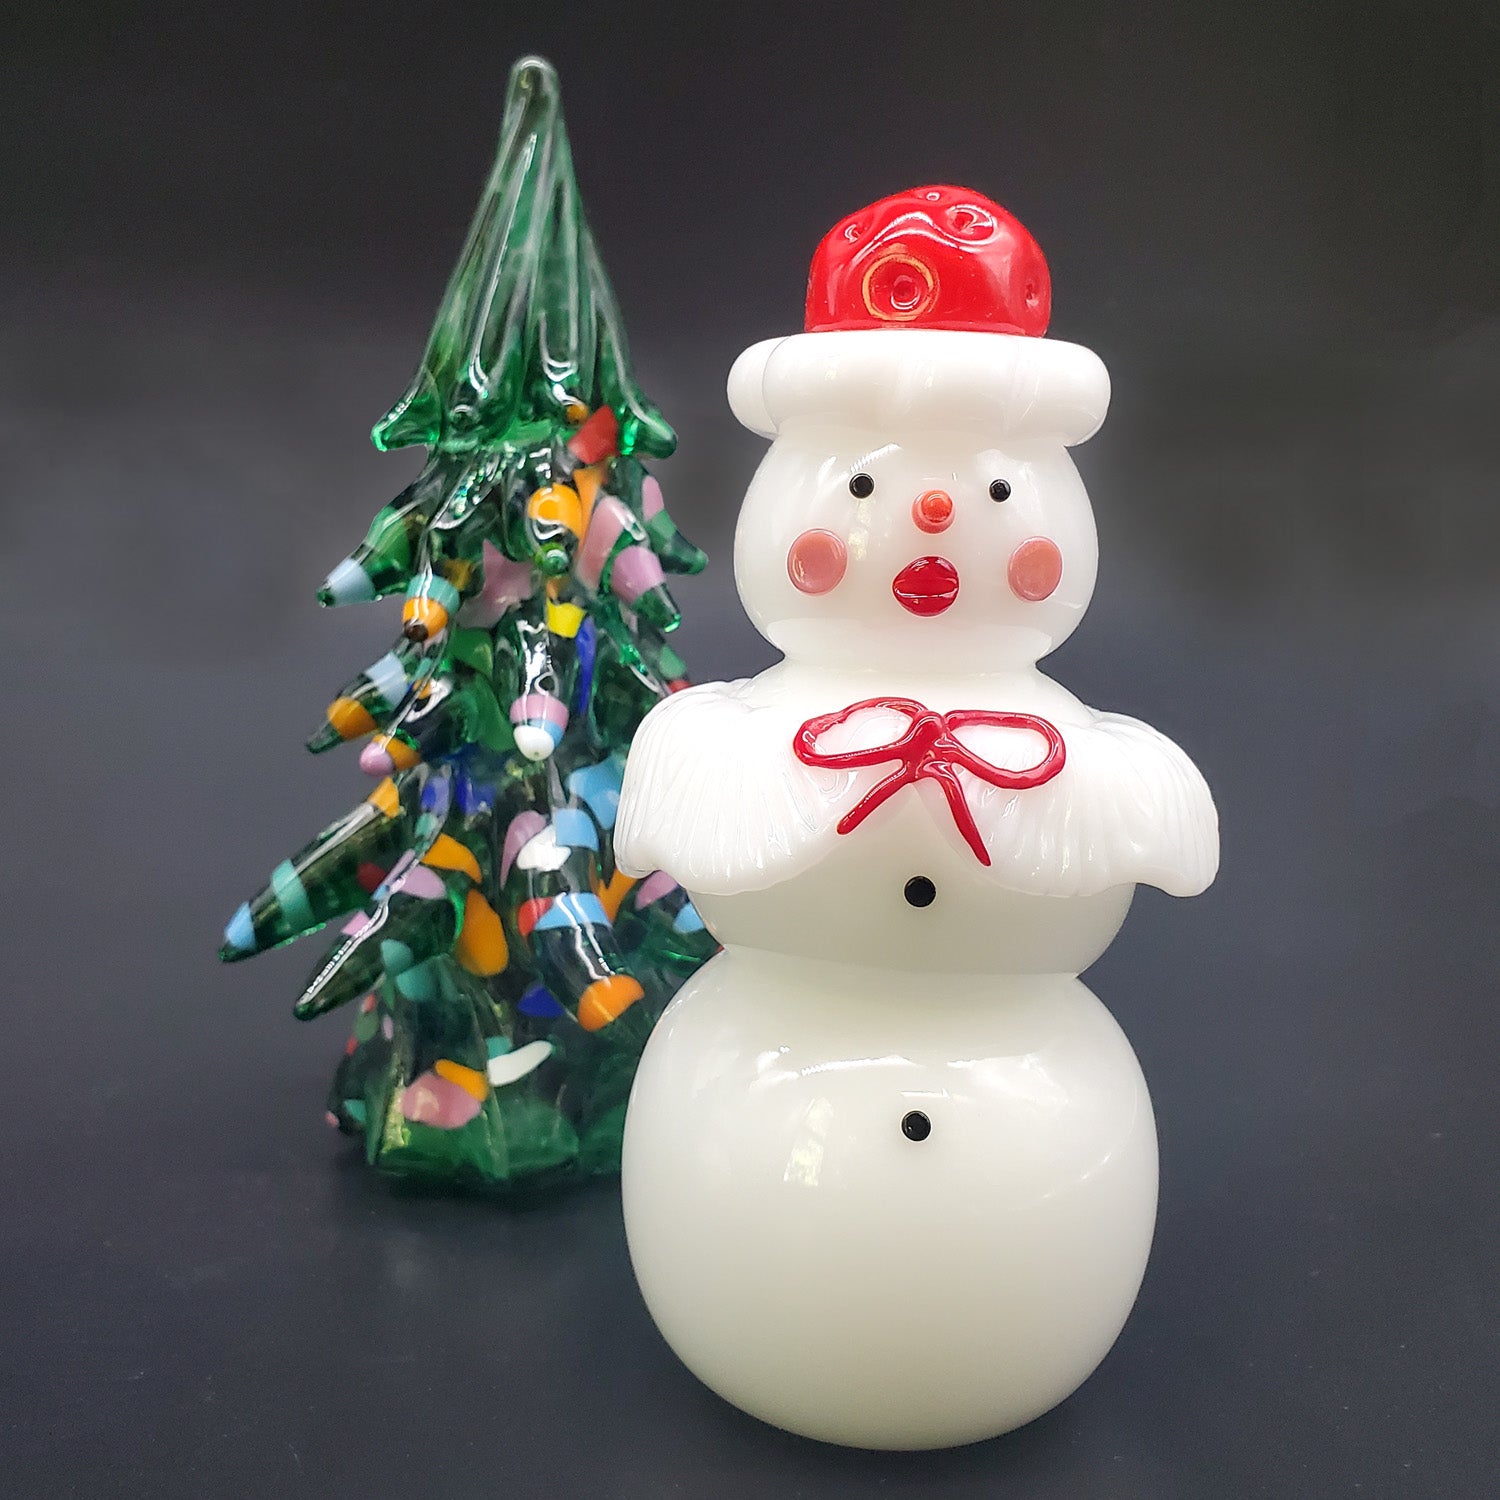 Snowman - Santa or Mrs. Claus